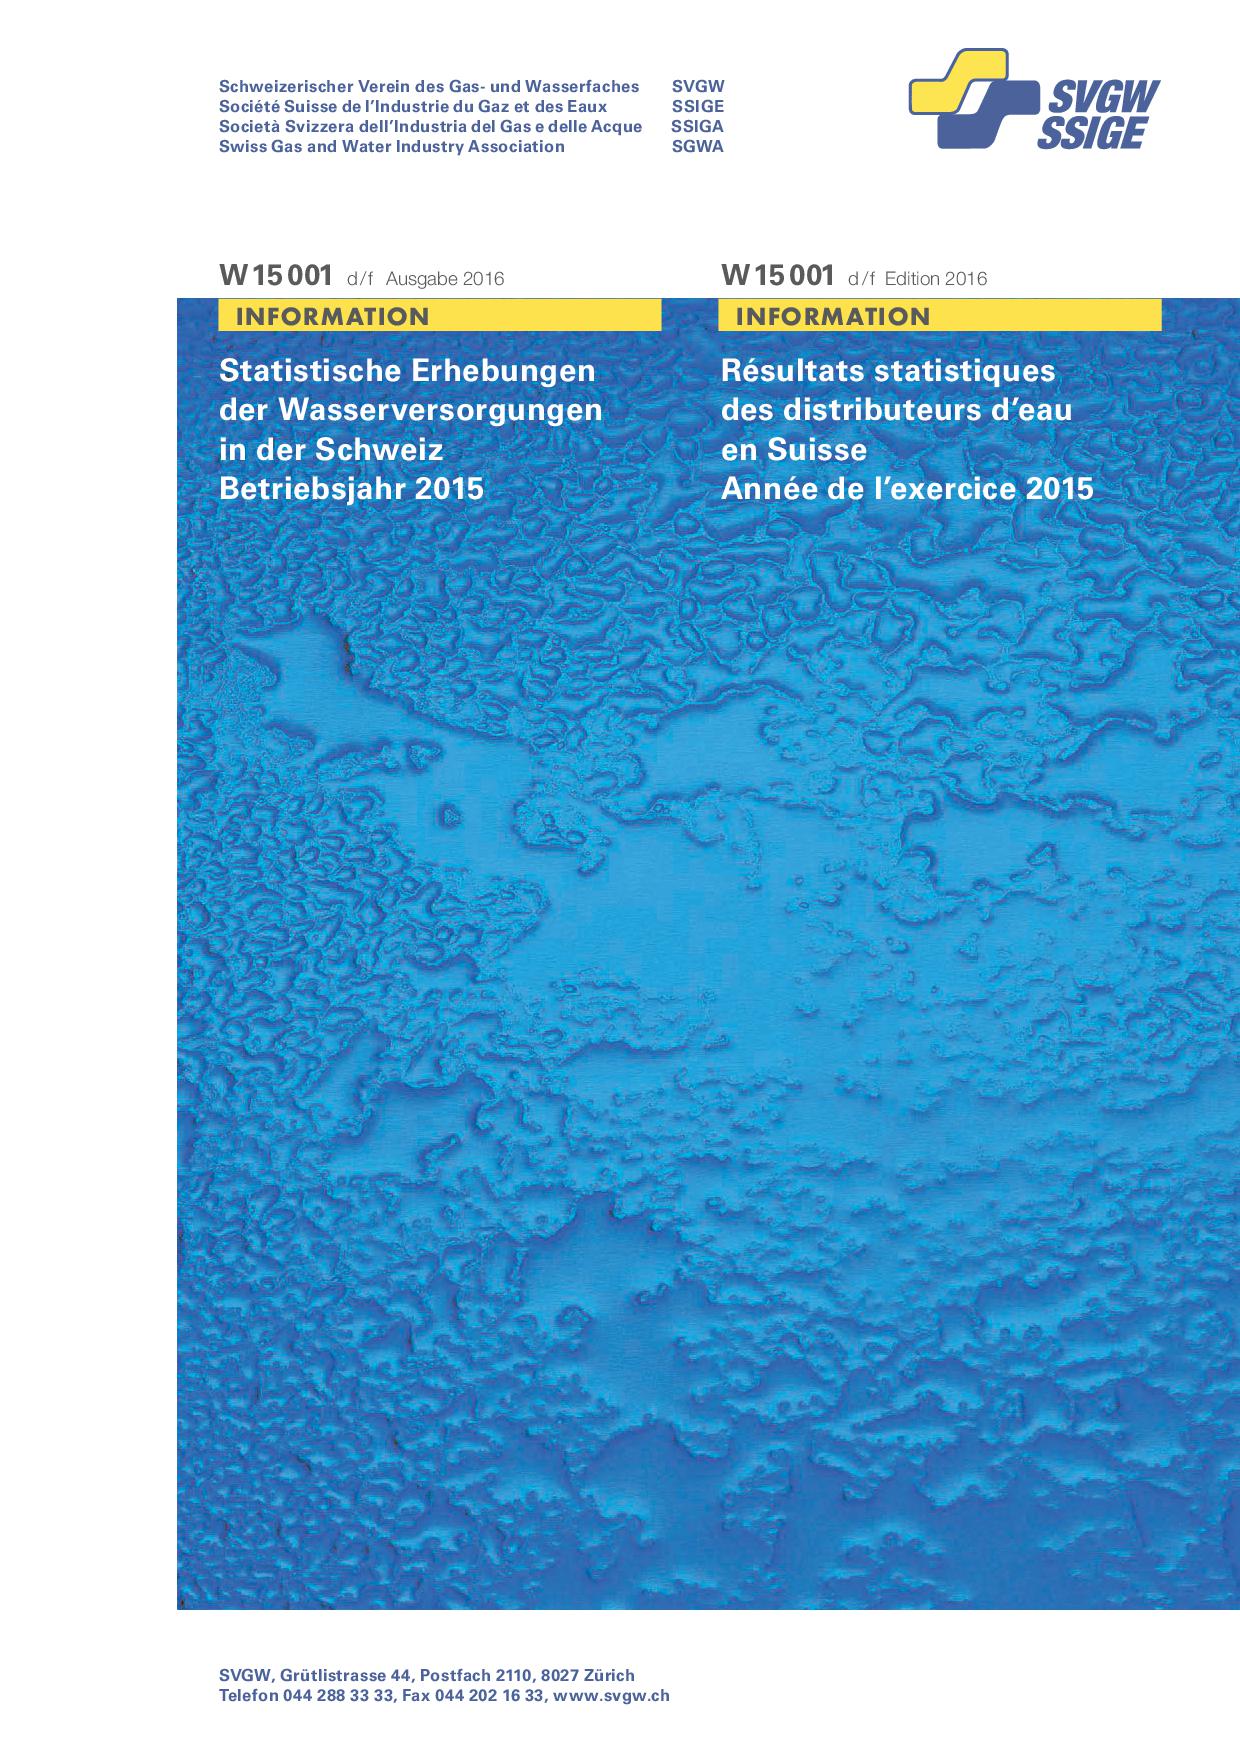 W15001 d/f Statistique d'eau 2016 (exercise 2015) (version complète) (1)